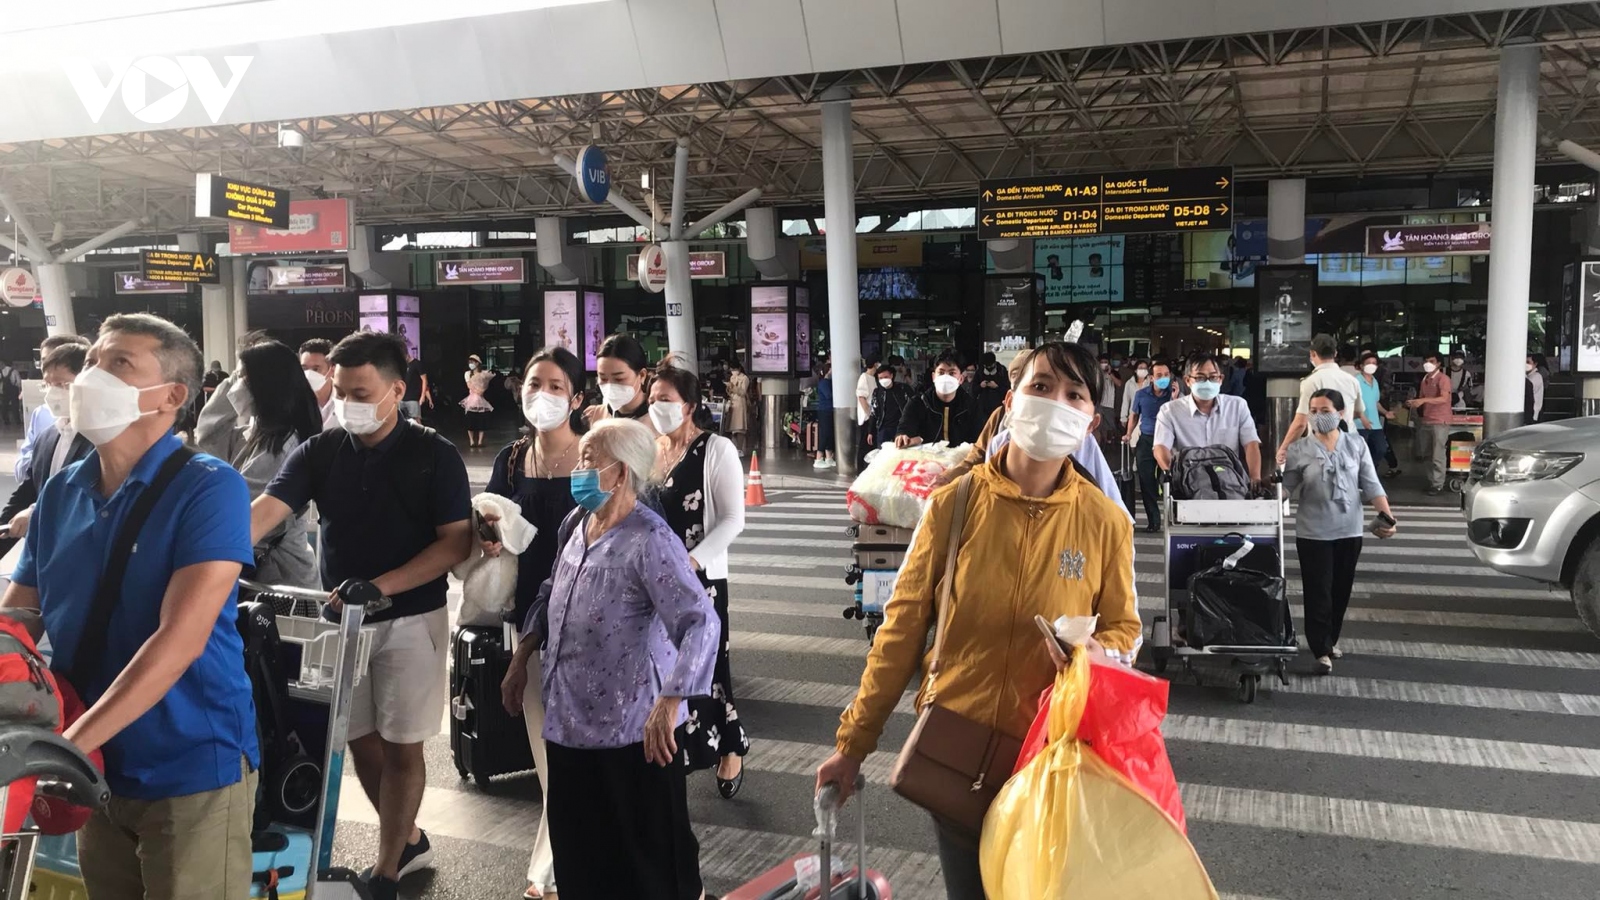 “Nóng” ở sân bay Tân Sơn Nhất, Bộ GTVT họp khẩn để “hạ nhiệt”